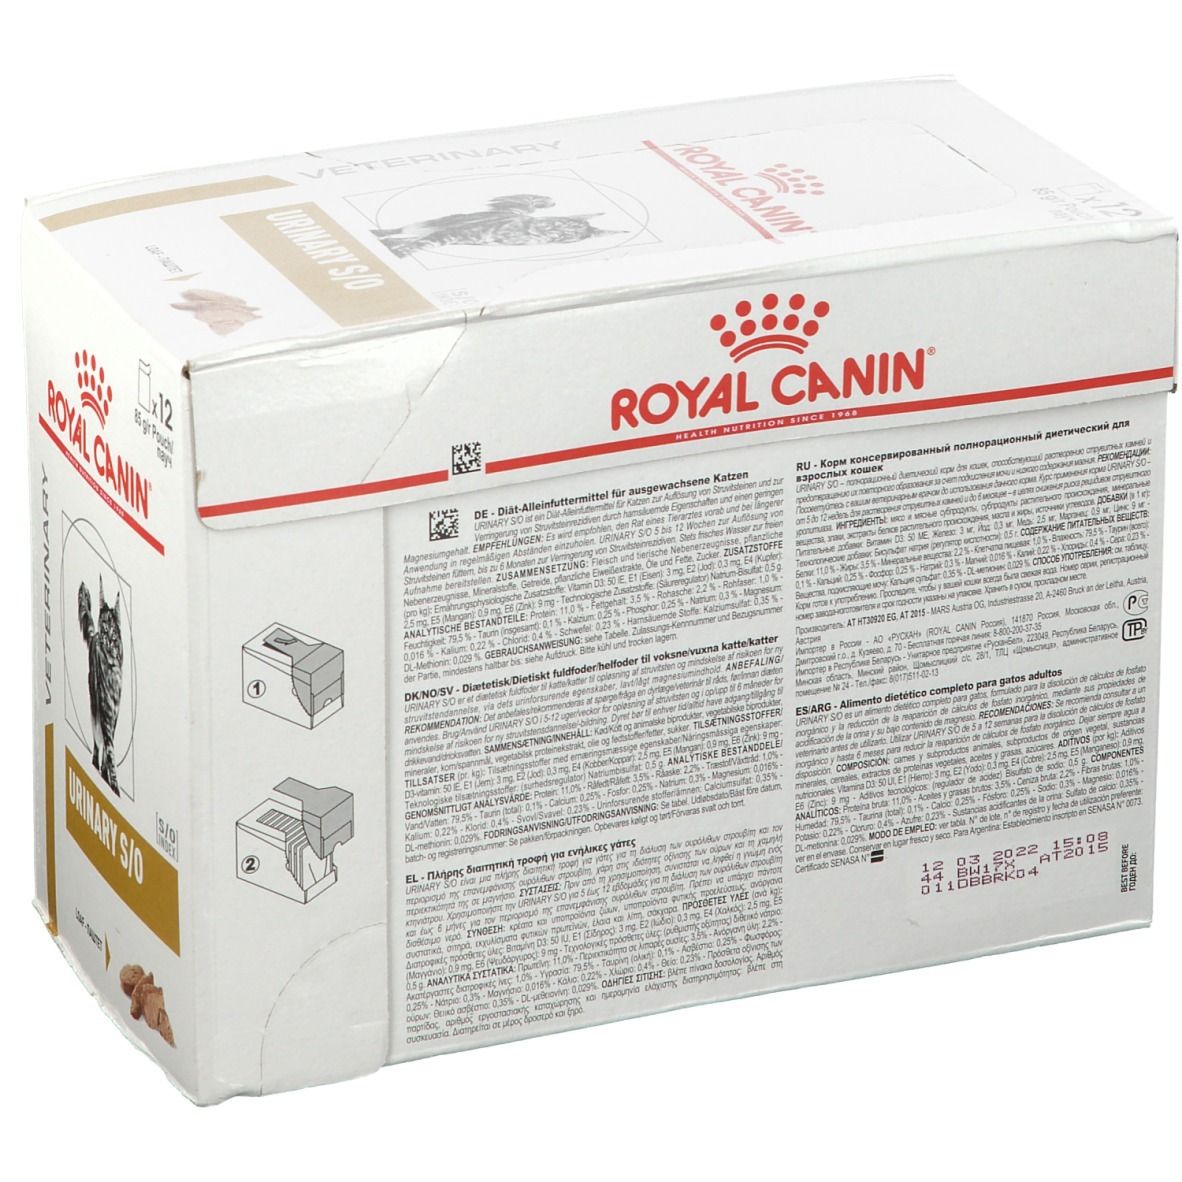 Royal Canin® Veterinary Feline Urinary S/O